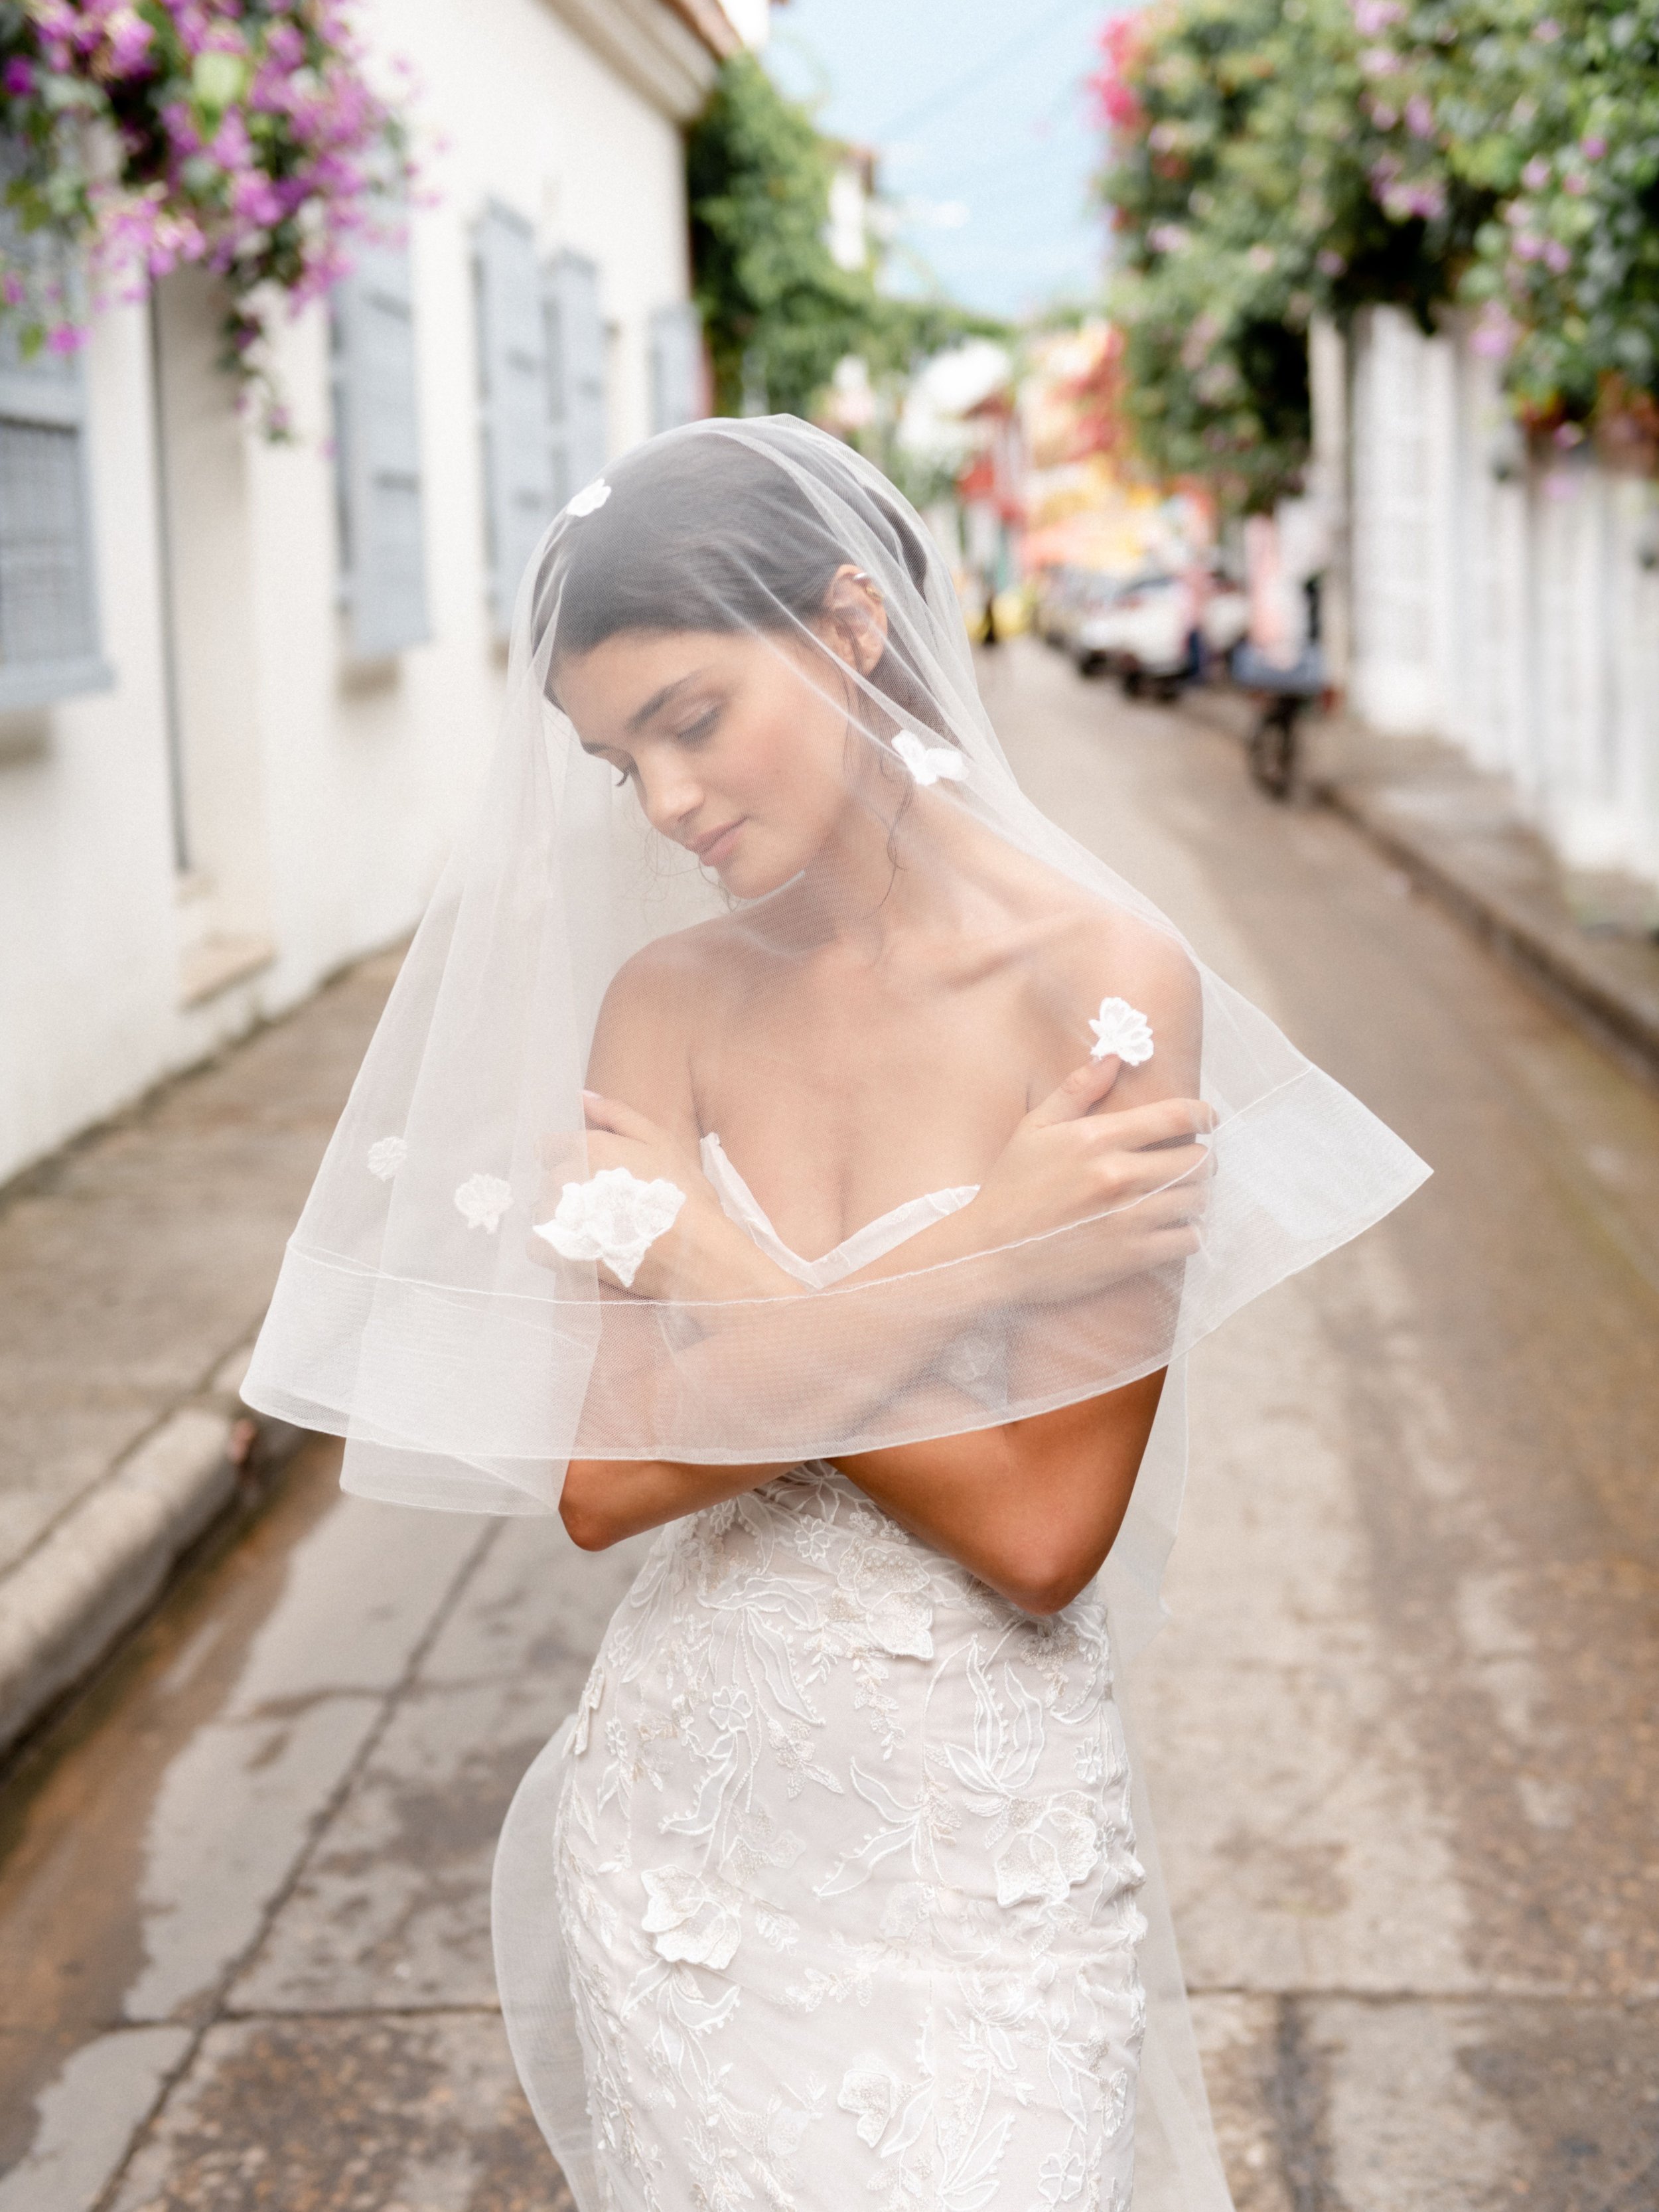 Monique Lhuillier Wedding gown